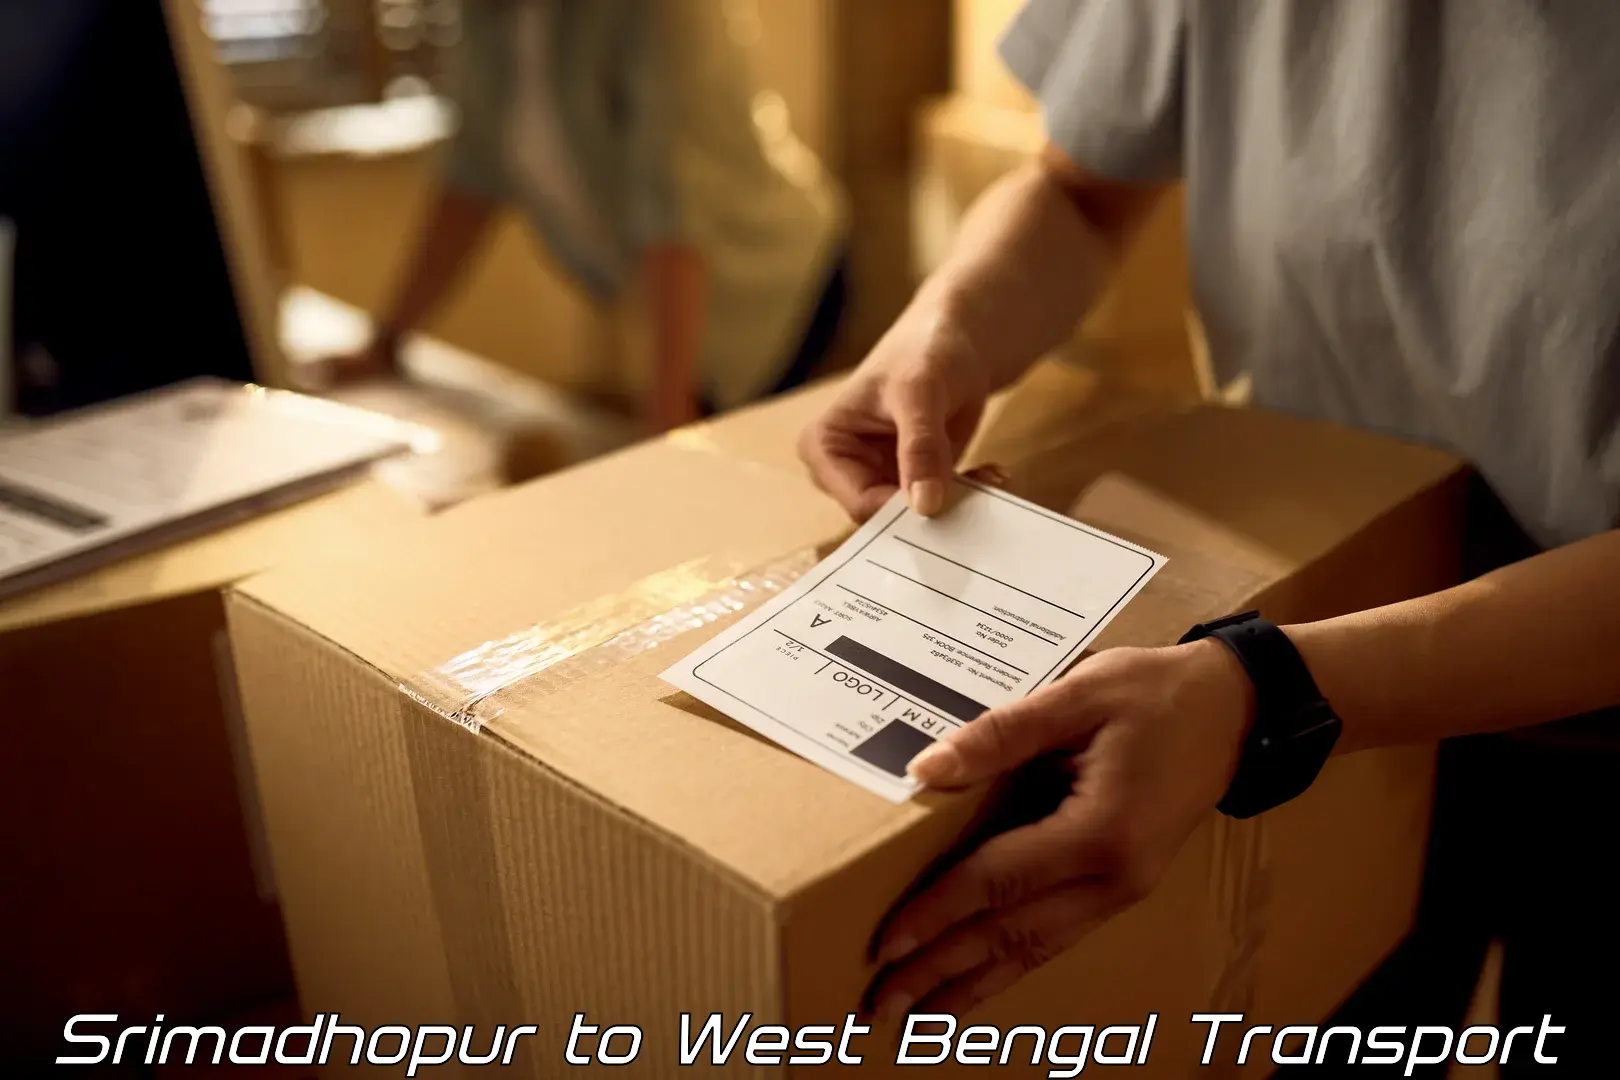 Road transport online services Srimadhopur to Swarupnagar